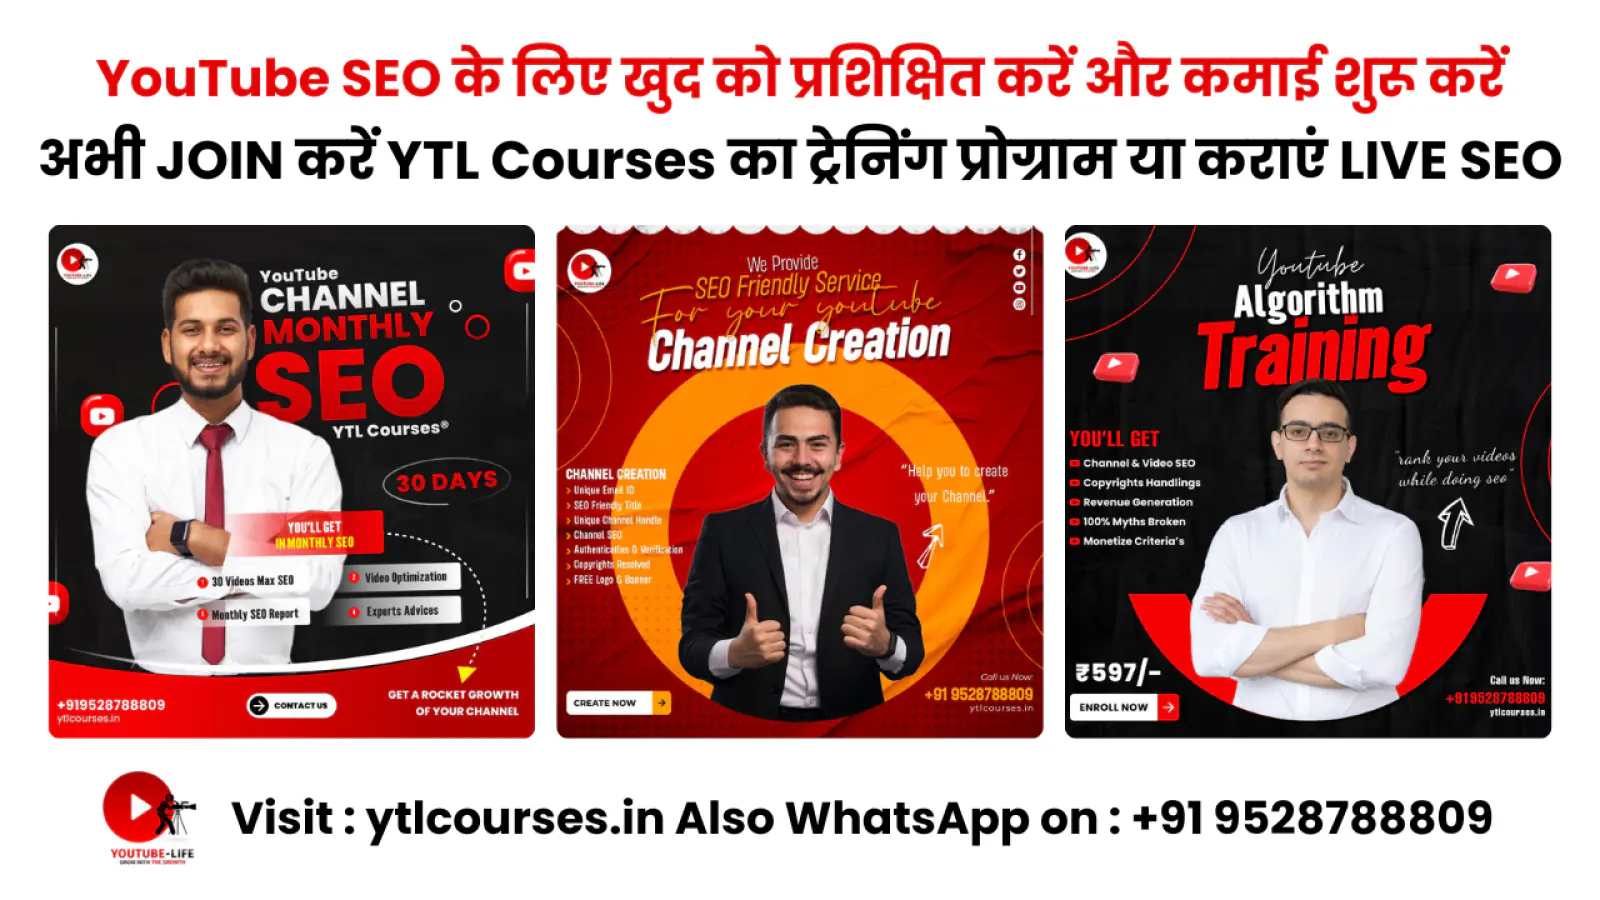 YTL Courses ® के साथ YouTube SEO में महारत हासिल करें: आपका वन-स्टॉप समाधान!